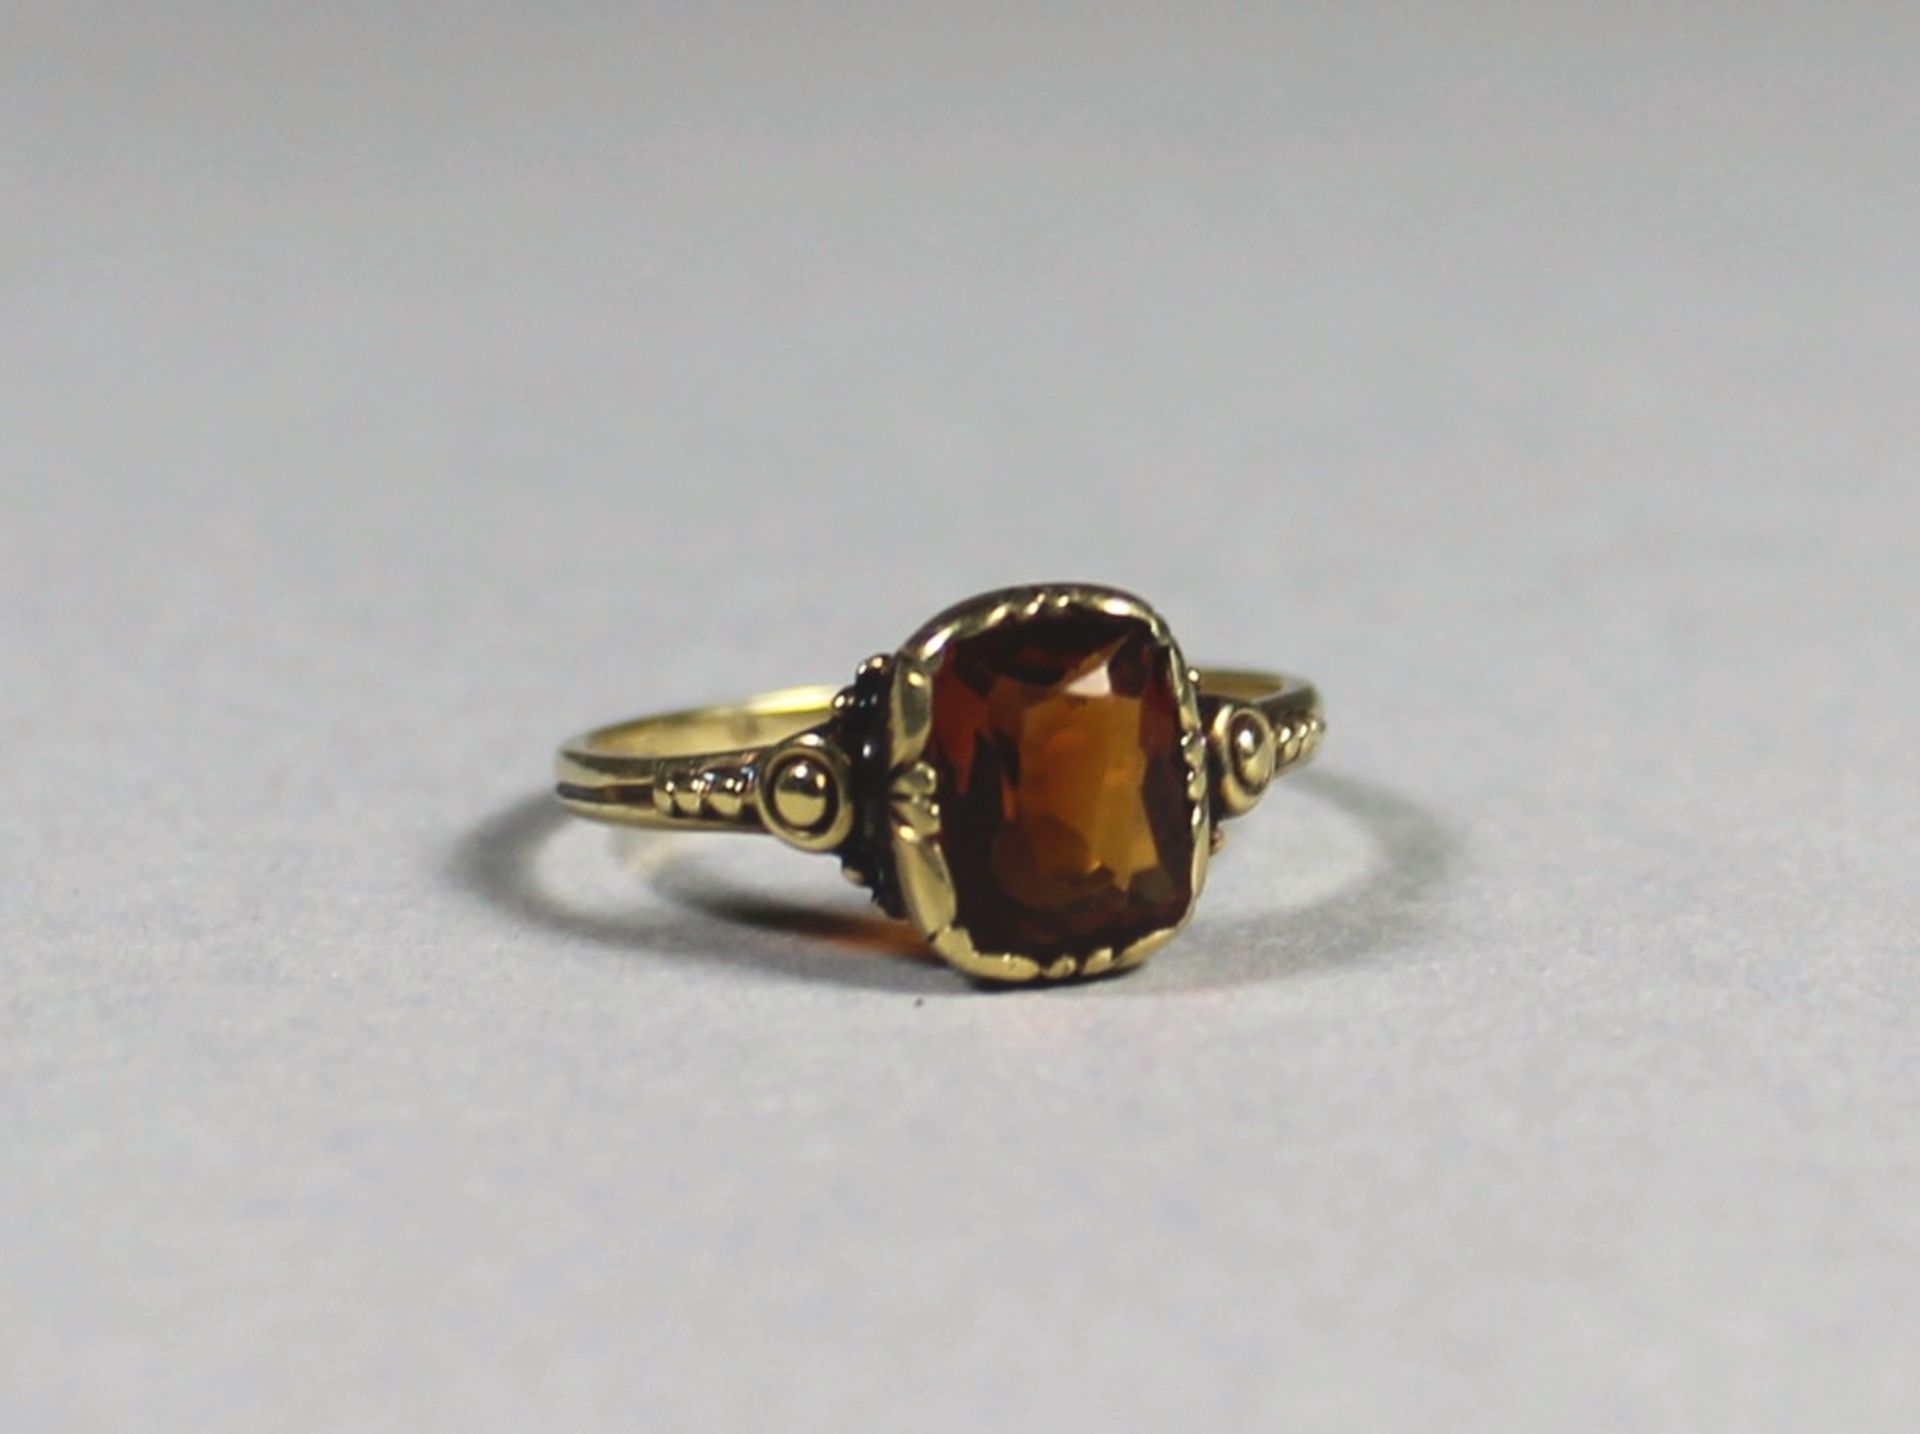 1 alter Ring 14kt.Gg (585/000), schön gestalteter Ringkopf besetzt mit honigfarbenem Stein, RG